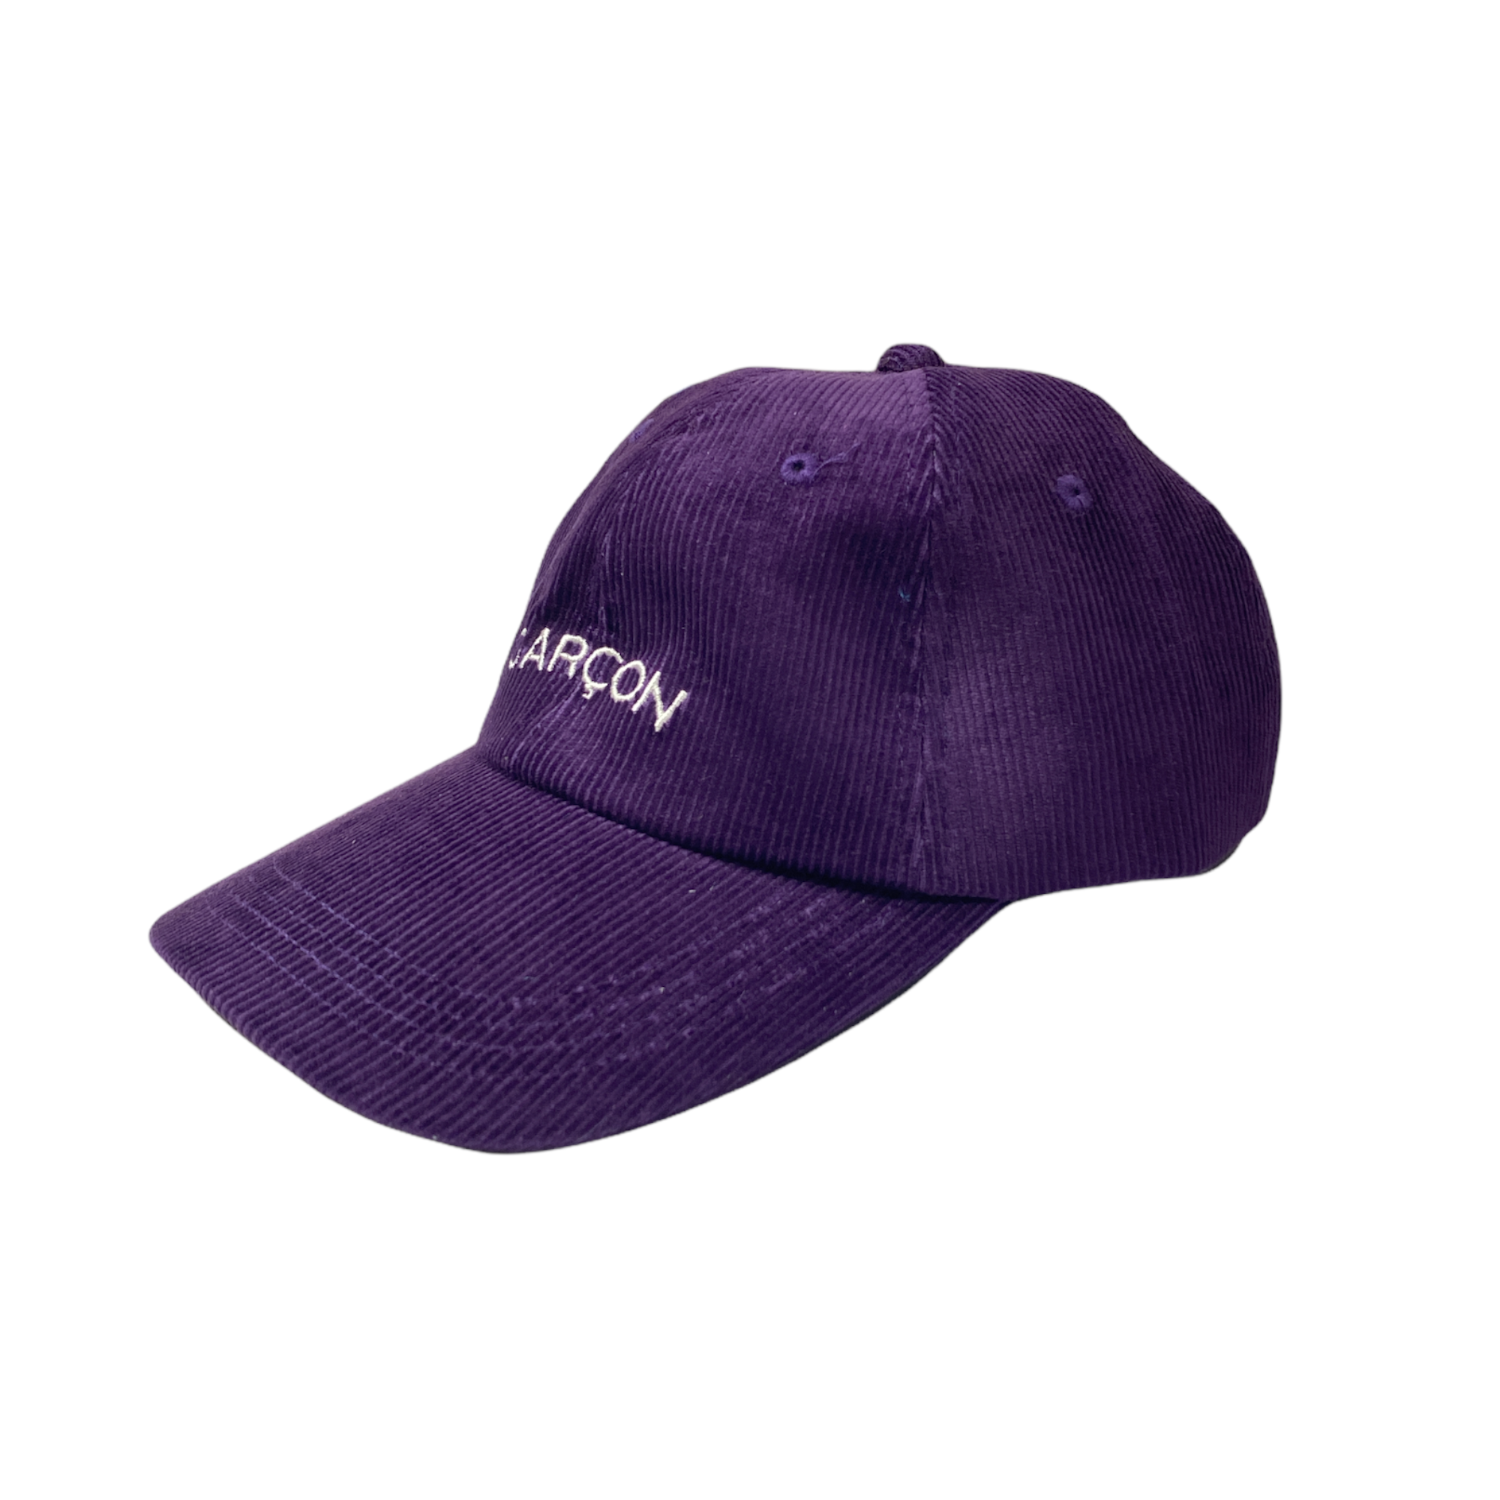 Garcon Cap (Purple)